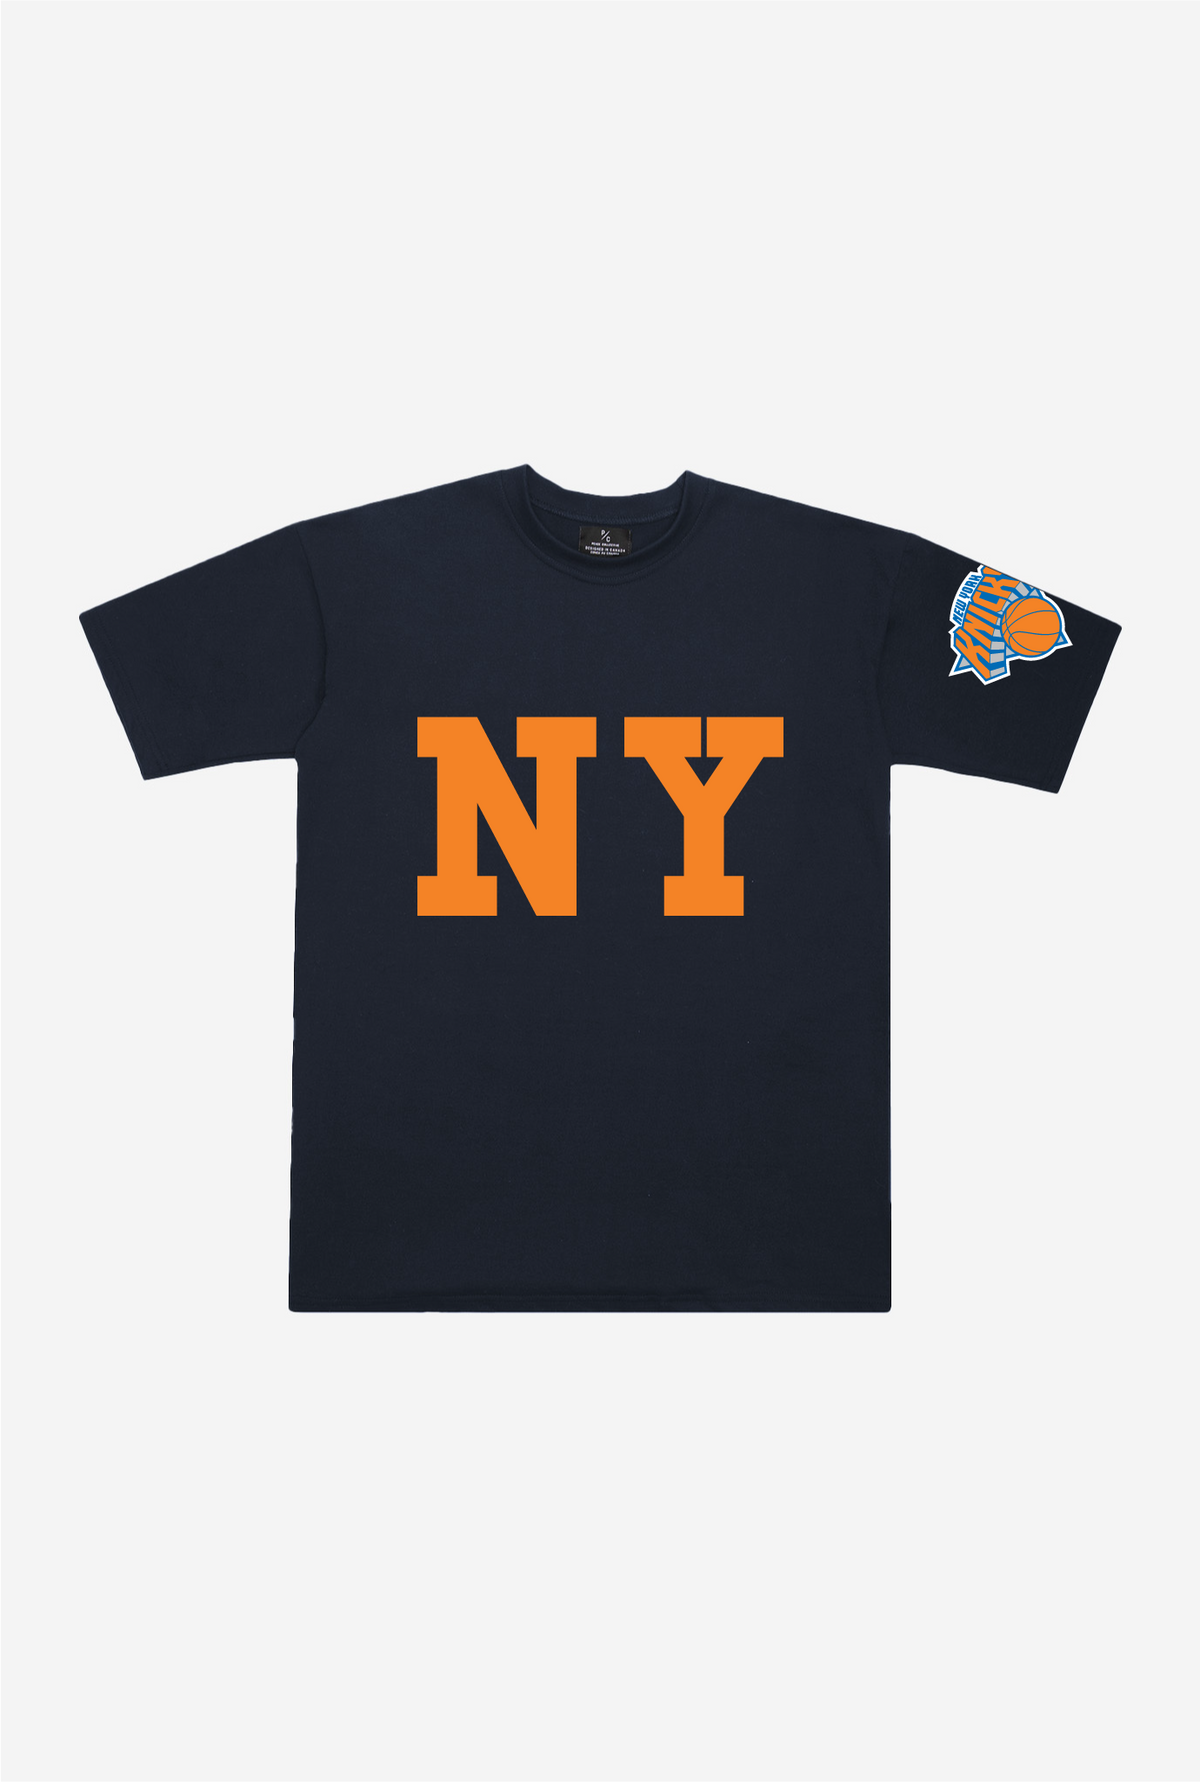 New York Knicks 'NY' Heavyweight T-Shirt - Navy